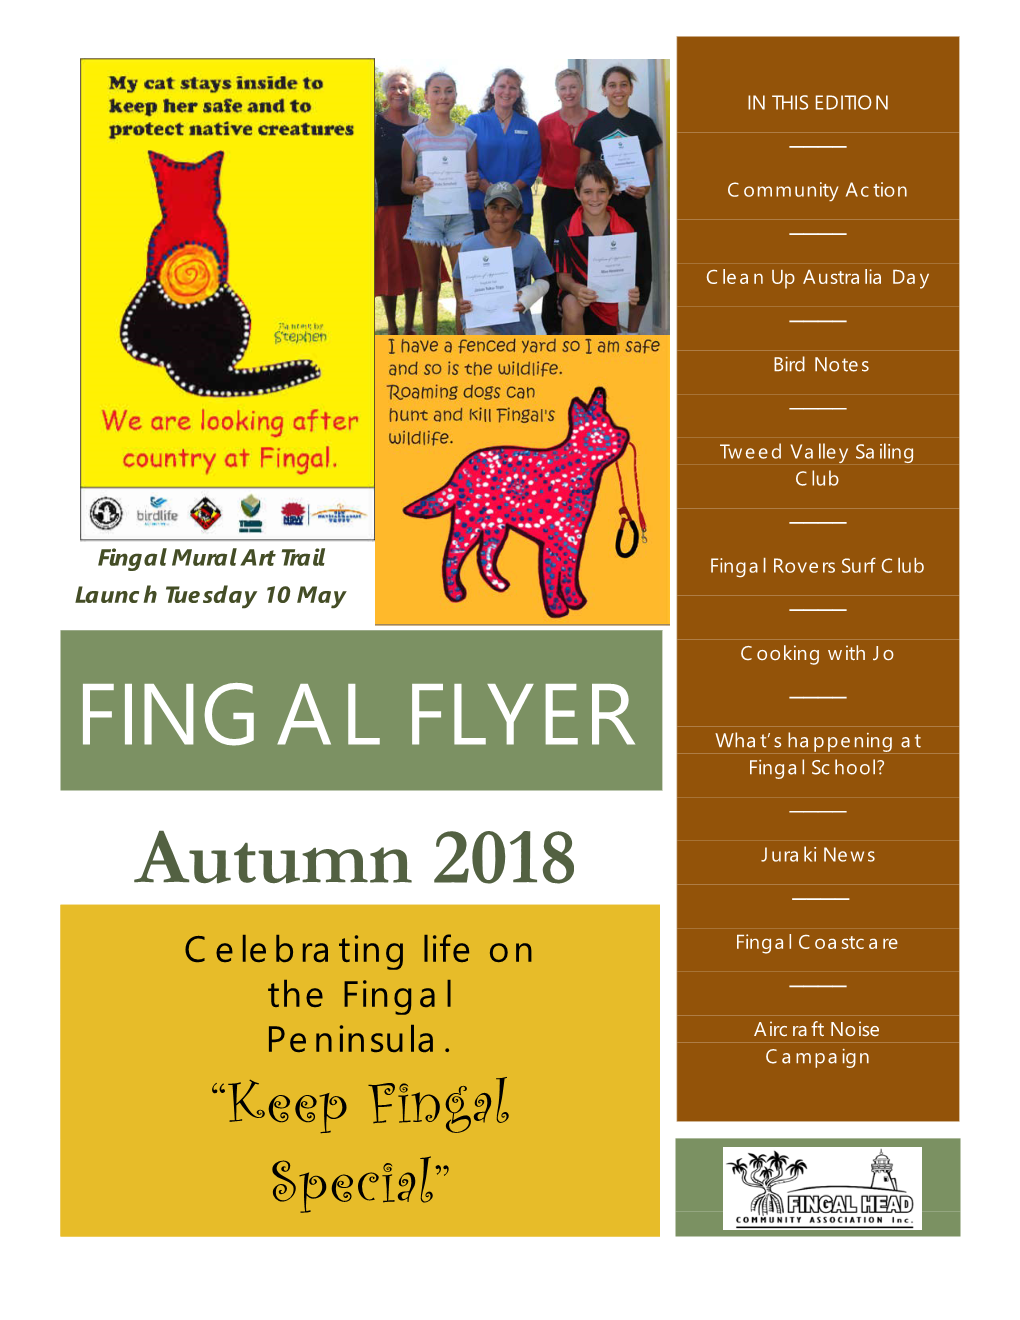 Fingal Flyer Autumn 2018